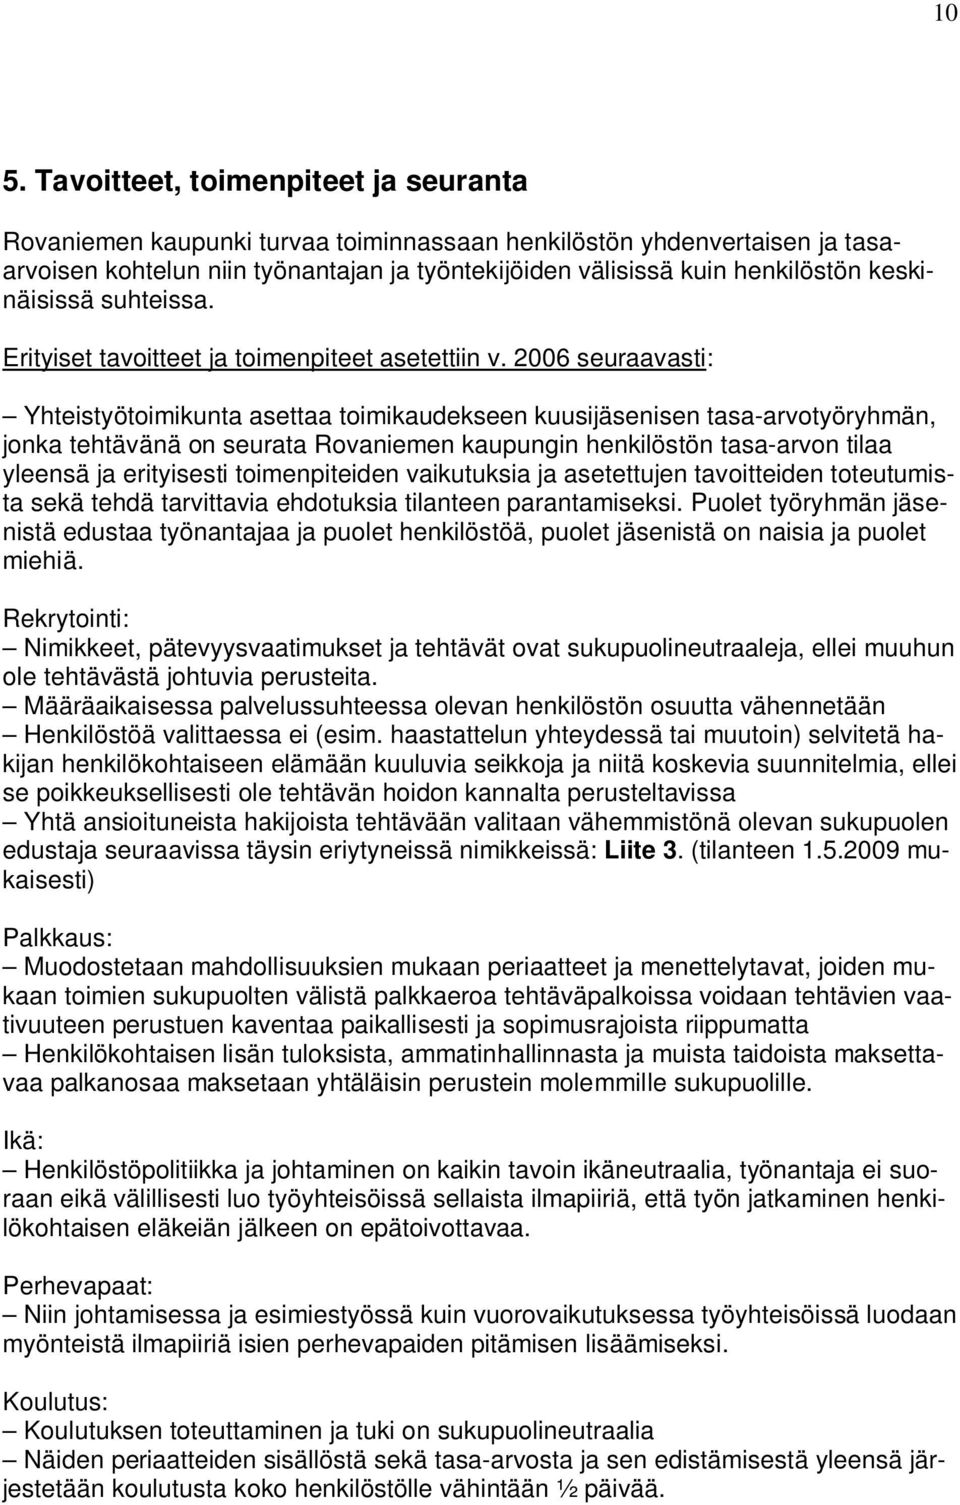 2006 seuraavasti: Yhteistyötoimikunta asettaa toimikaudekseen kuusijäsenisen tasa-arvotyöryhmän, jonka tehtävänä on seurata Rovaniemen kaupungin henkilöstön tasa-arvon tilaa yleensä ja erityisesti